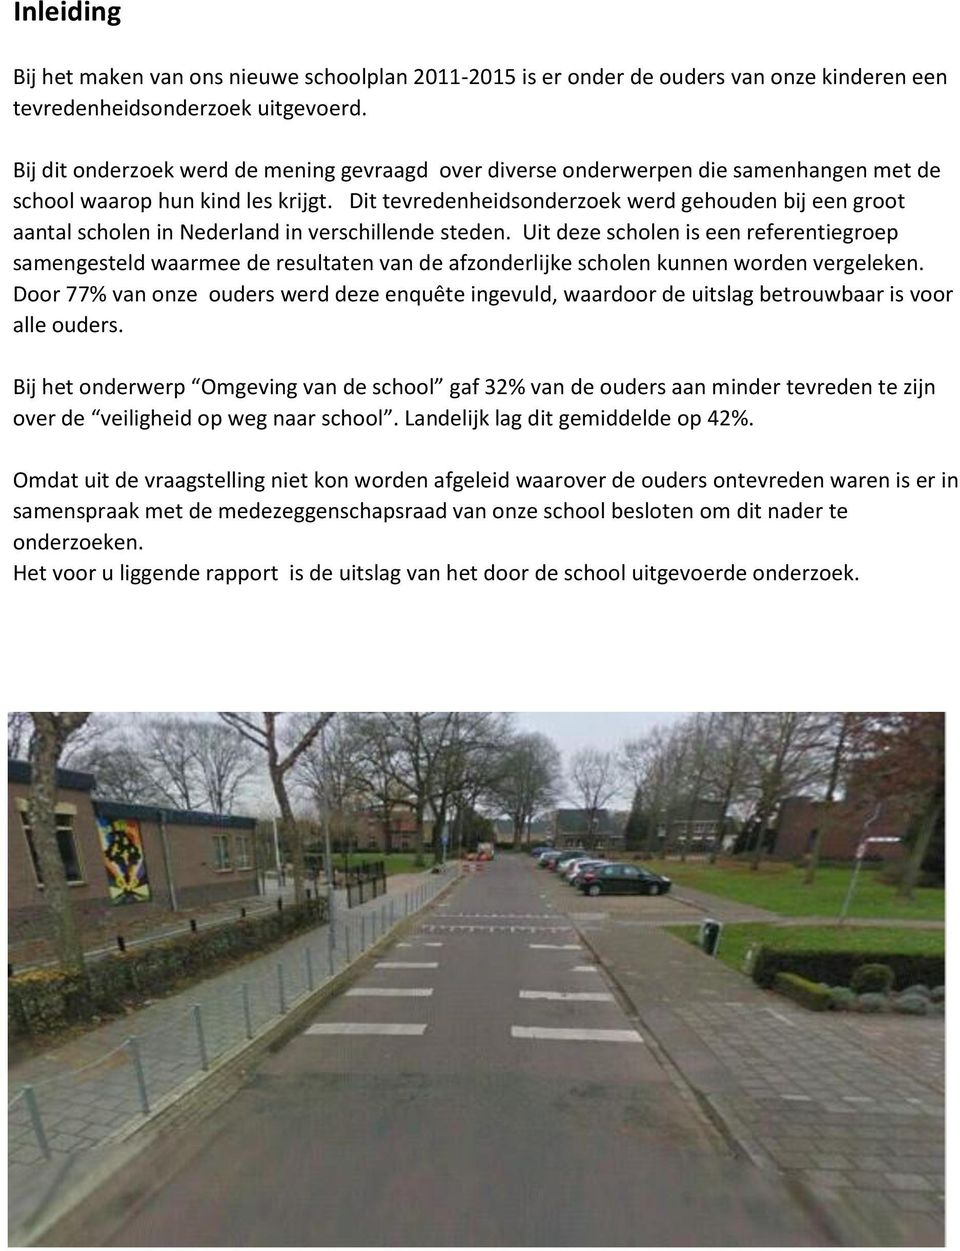 Dit tevredenheidsonderzoek werd gehouden bij een groot aantal scholen in Nederland in verschillende steden.